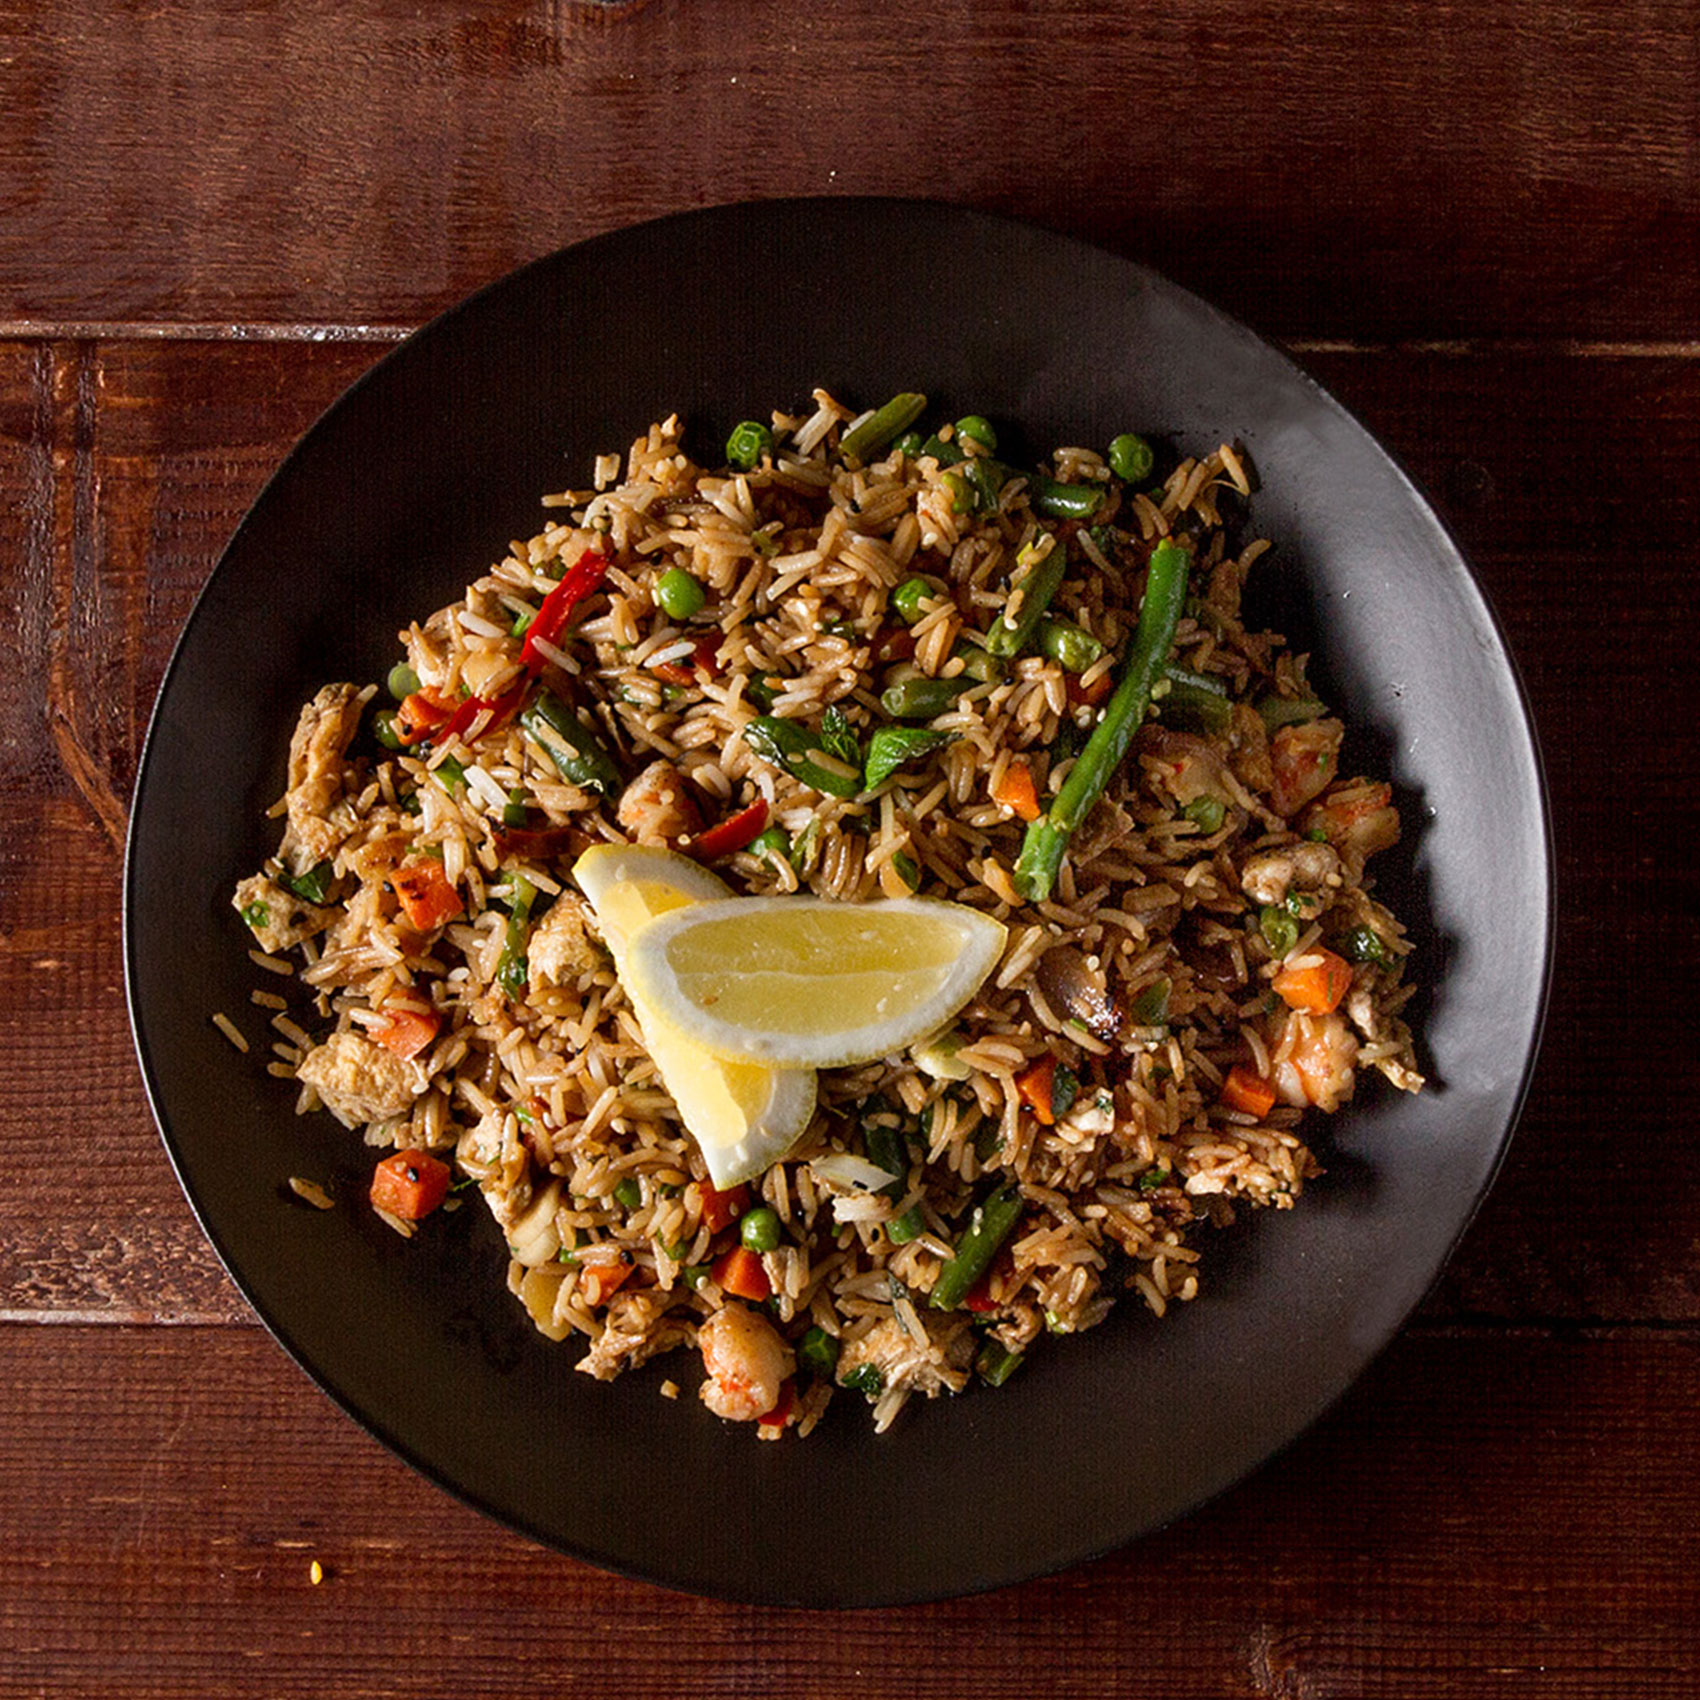 Κινέζικο ρύζι με λαχανικά και σόγια σος